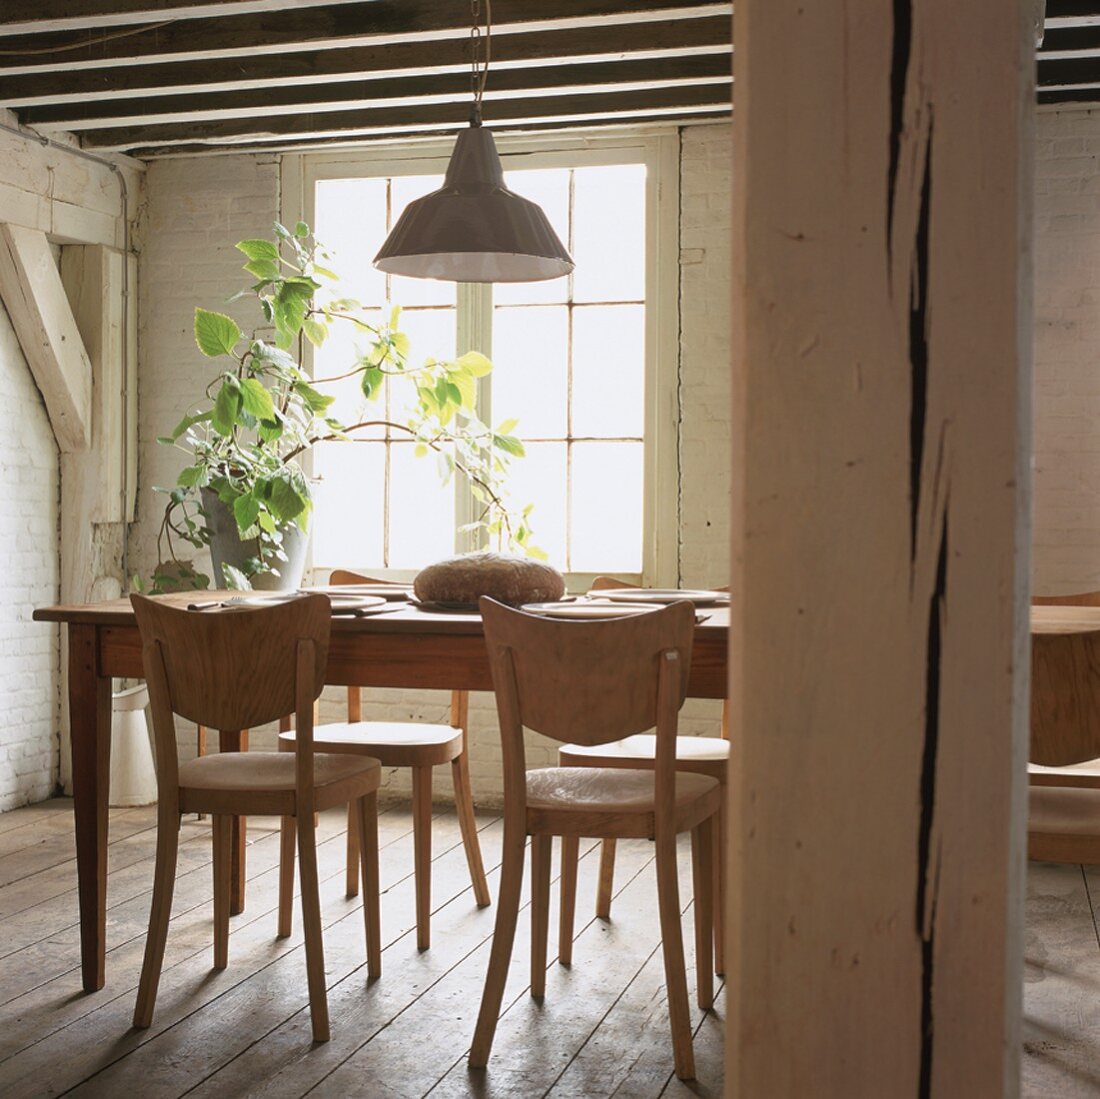 Einfache Holzmöbel bilden den Essplatz in einem traditionellen Fachwerkhaus mit typischer Holzbalkendecke